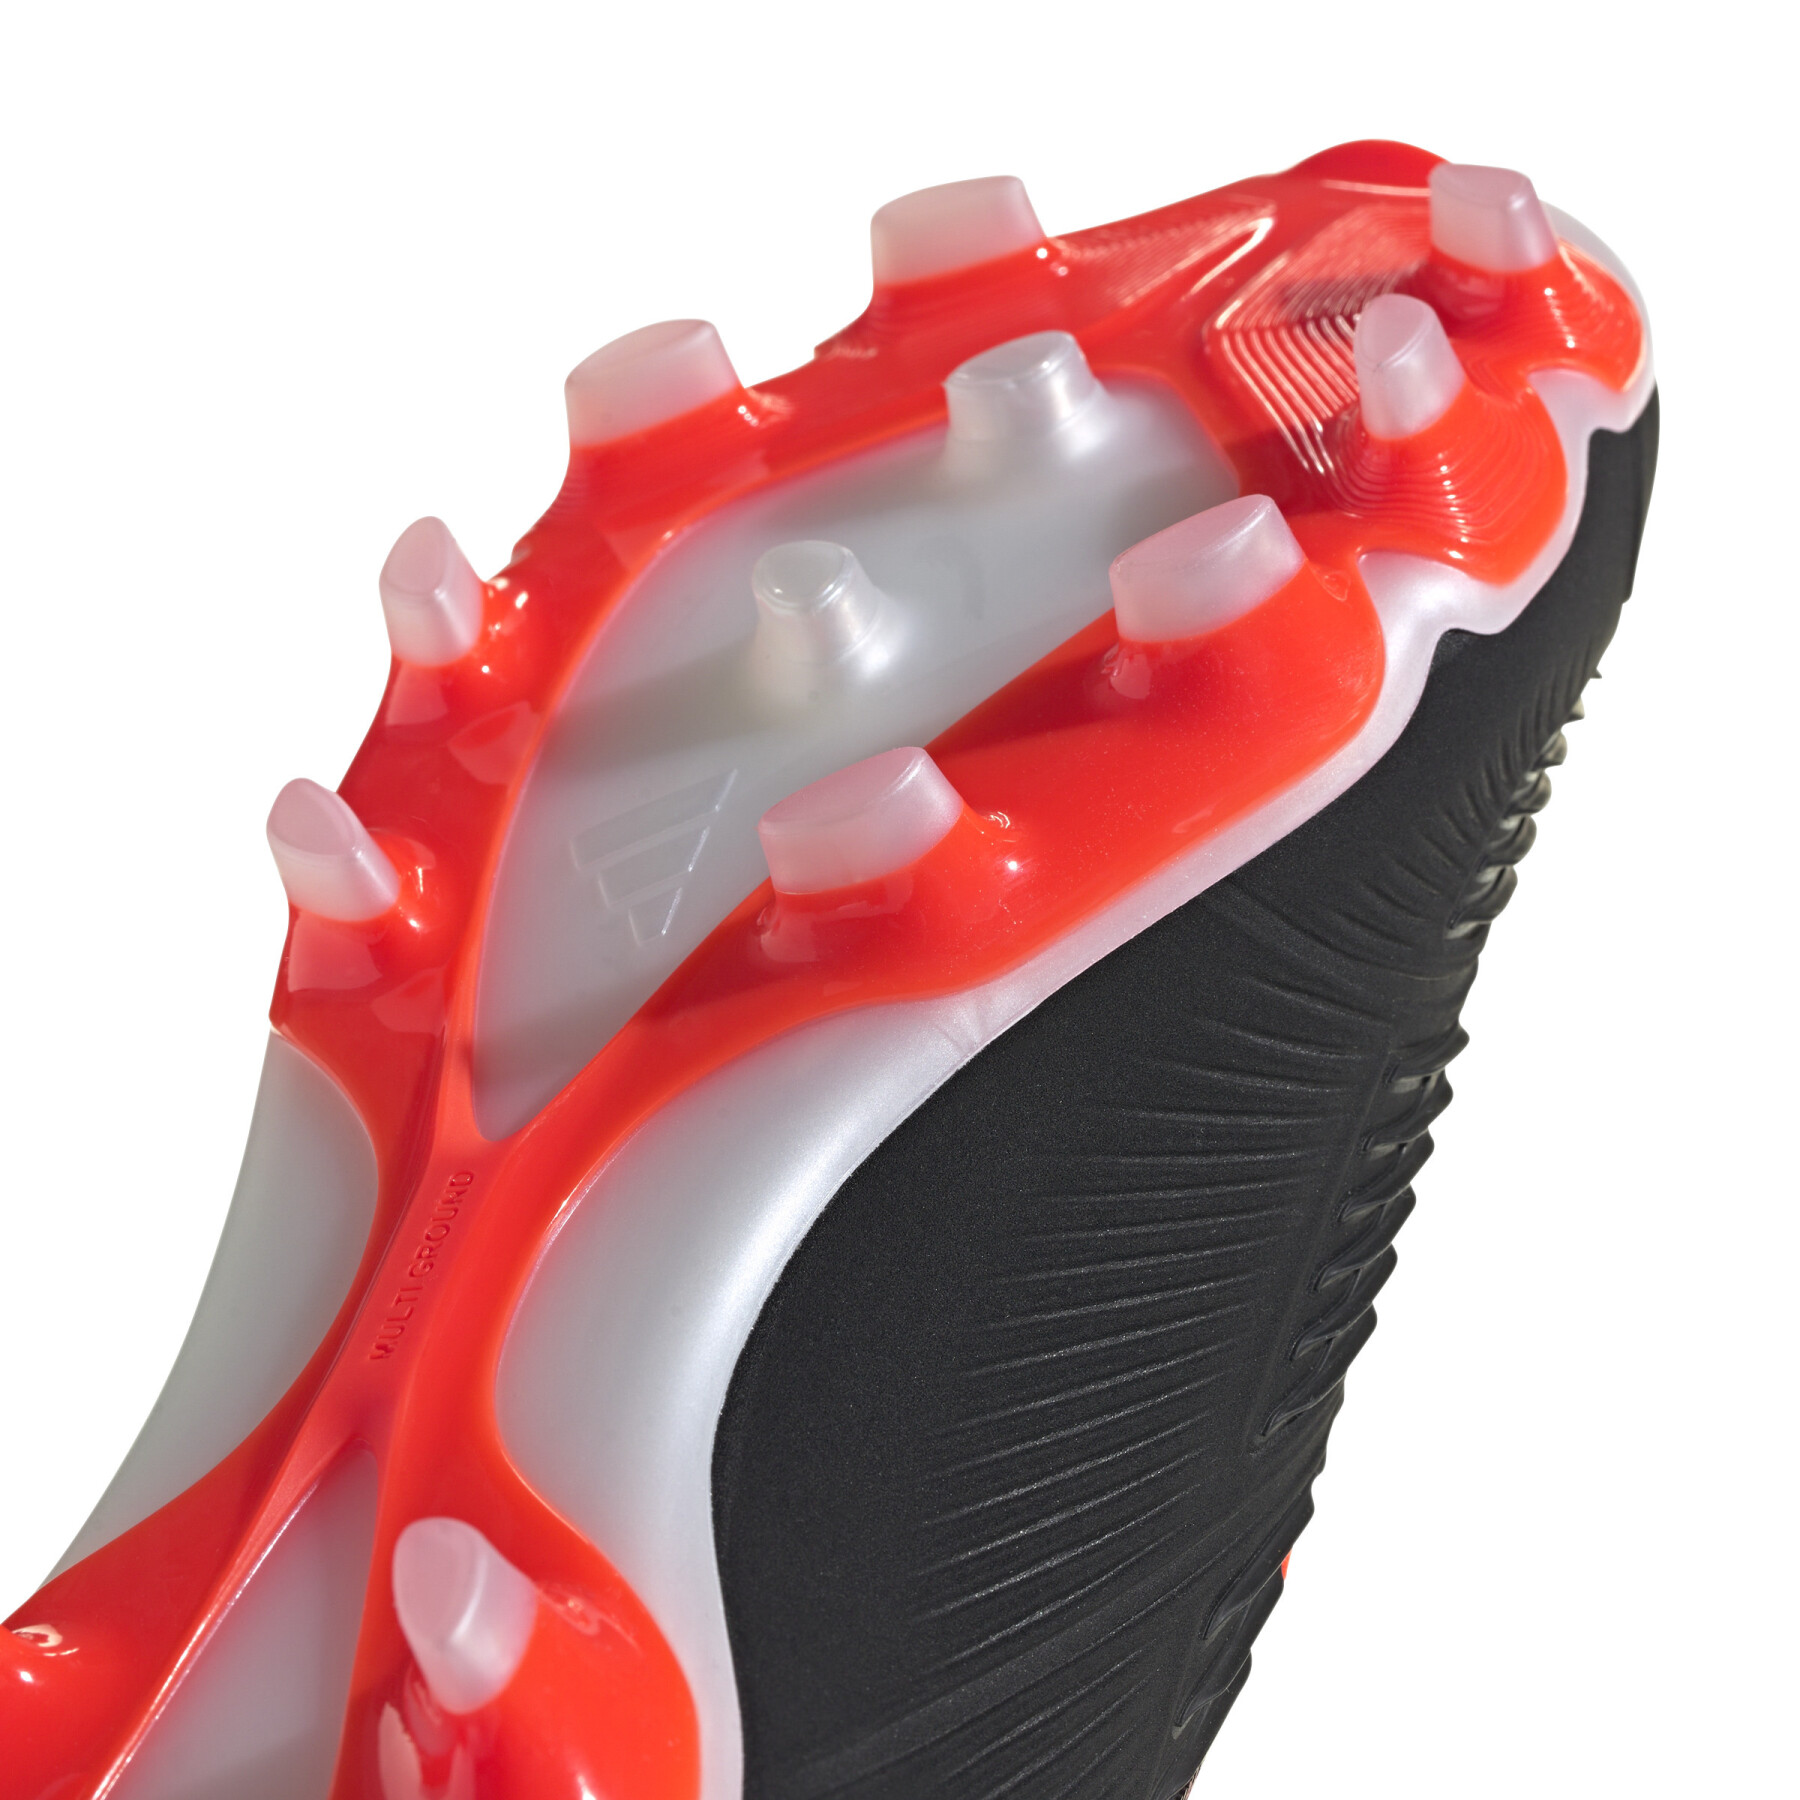 Sapatos de futebol adidas Predator Pro MG